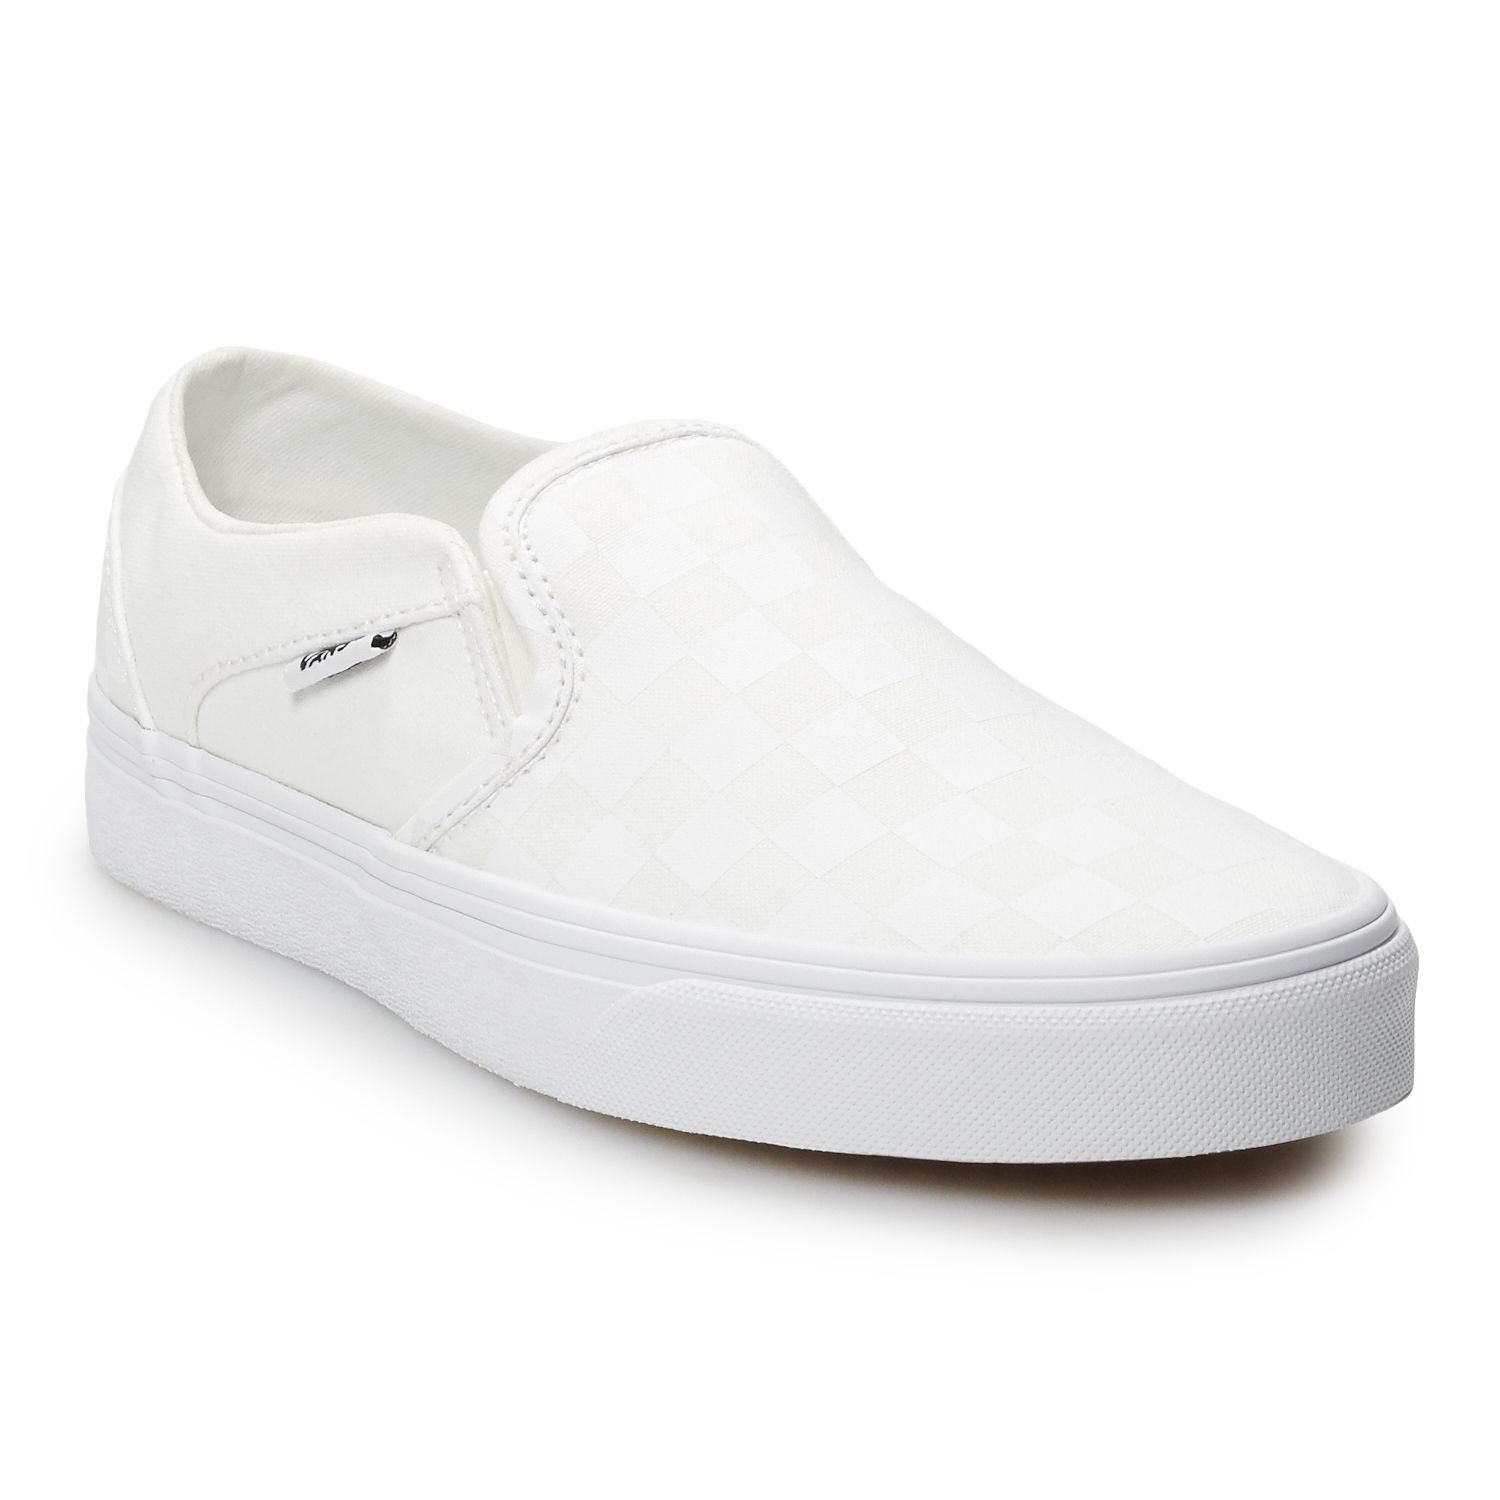 White Vans Slip-On | Kohl's